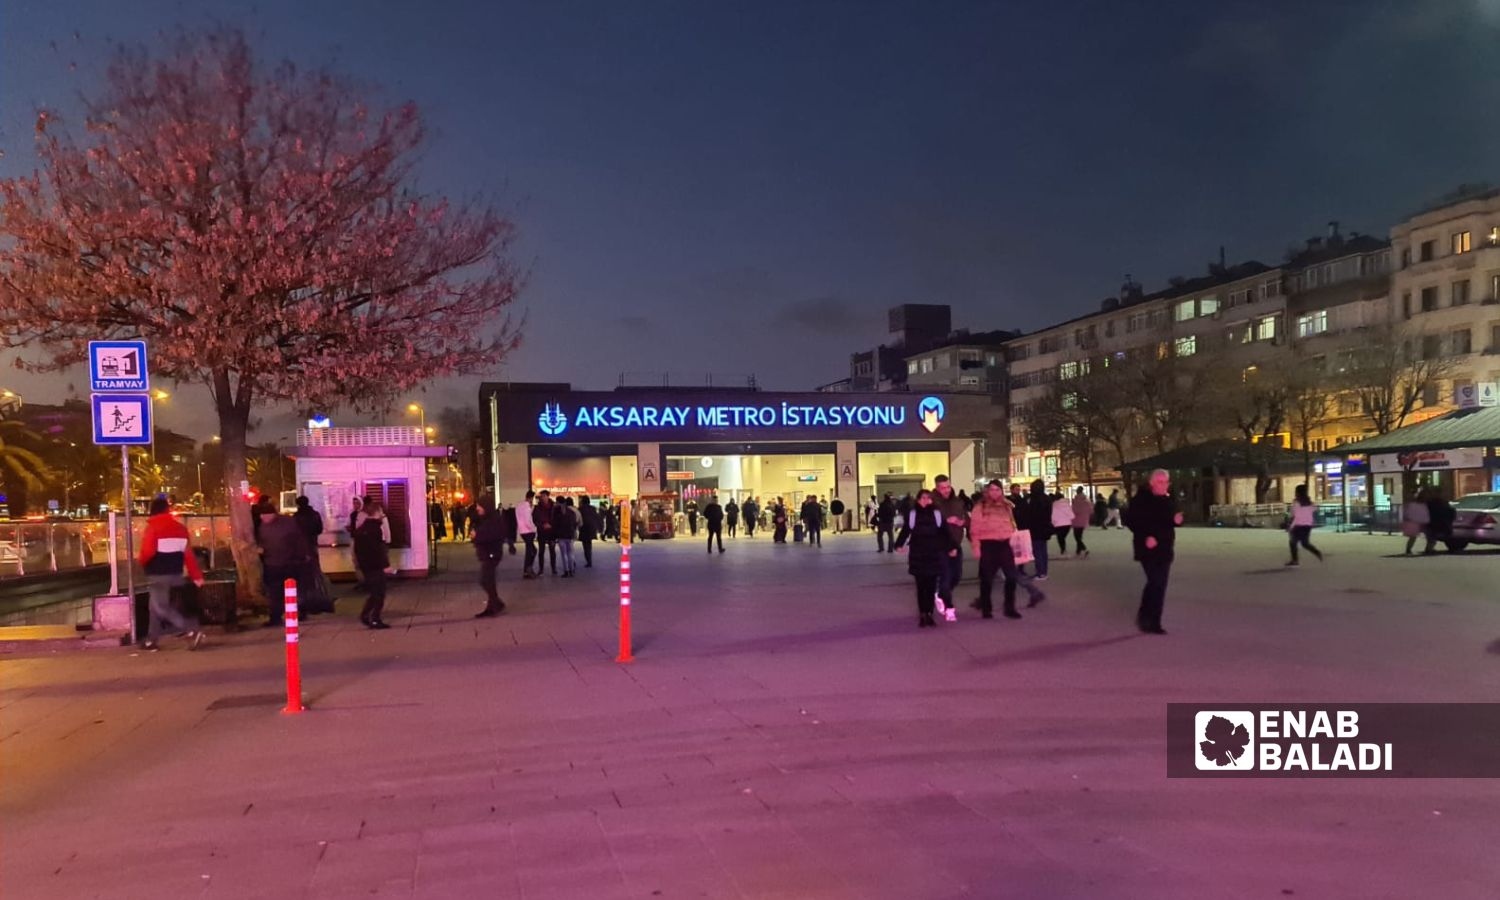 محطة "مترو" أكسراي" في منطقة الفاتح باسطنبول- 15 من كانون الثاني 2023 (عنب بلدي)